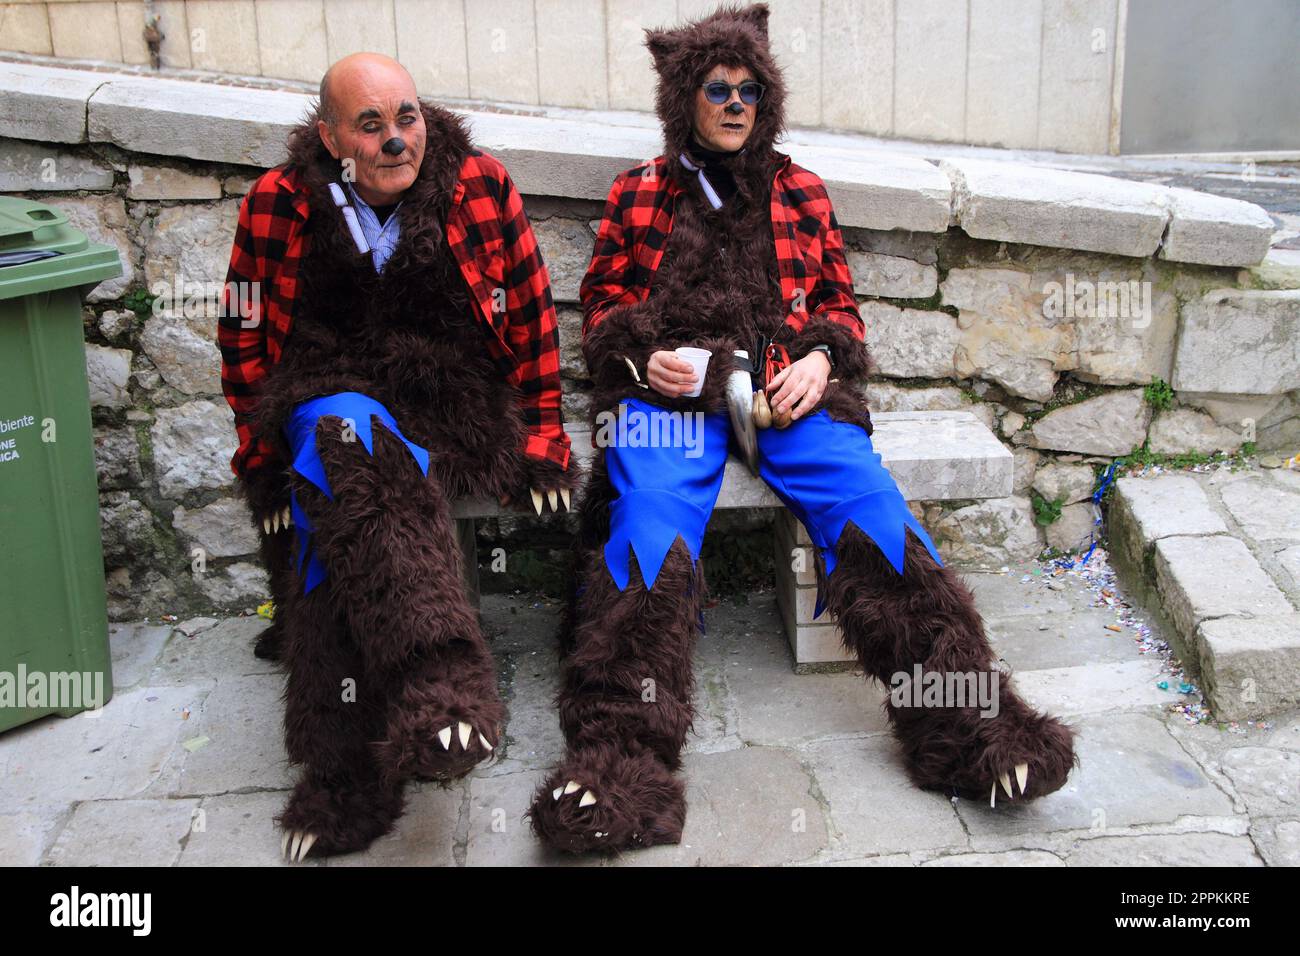 Deux hommes portant des vêtements de carnaval avec des personnages de chat et de renard Banque D'Images